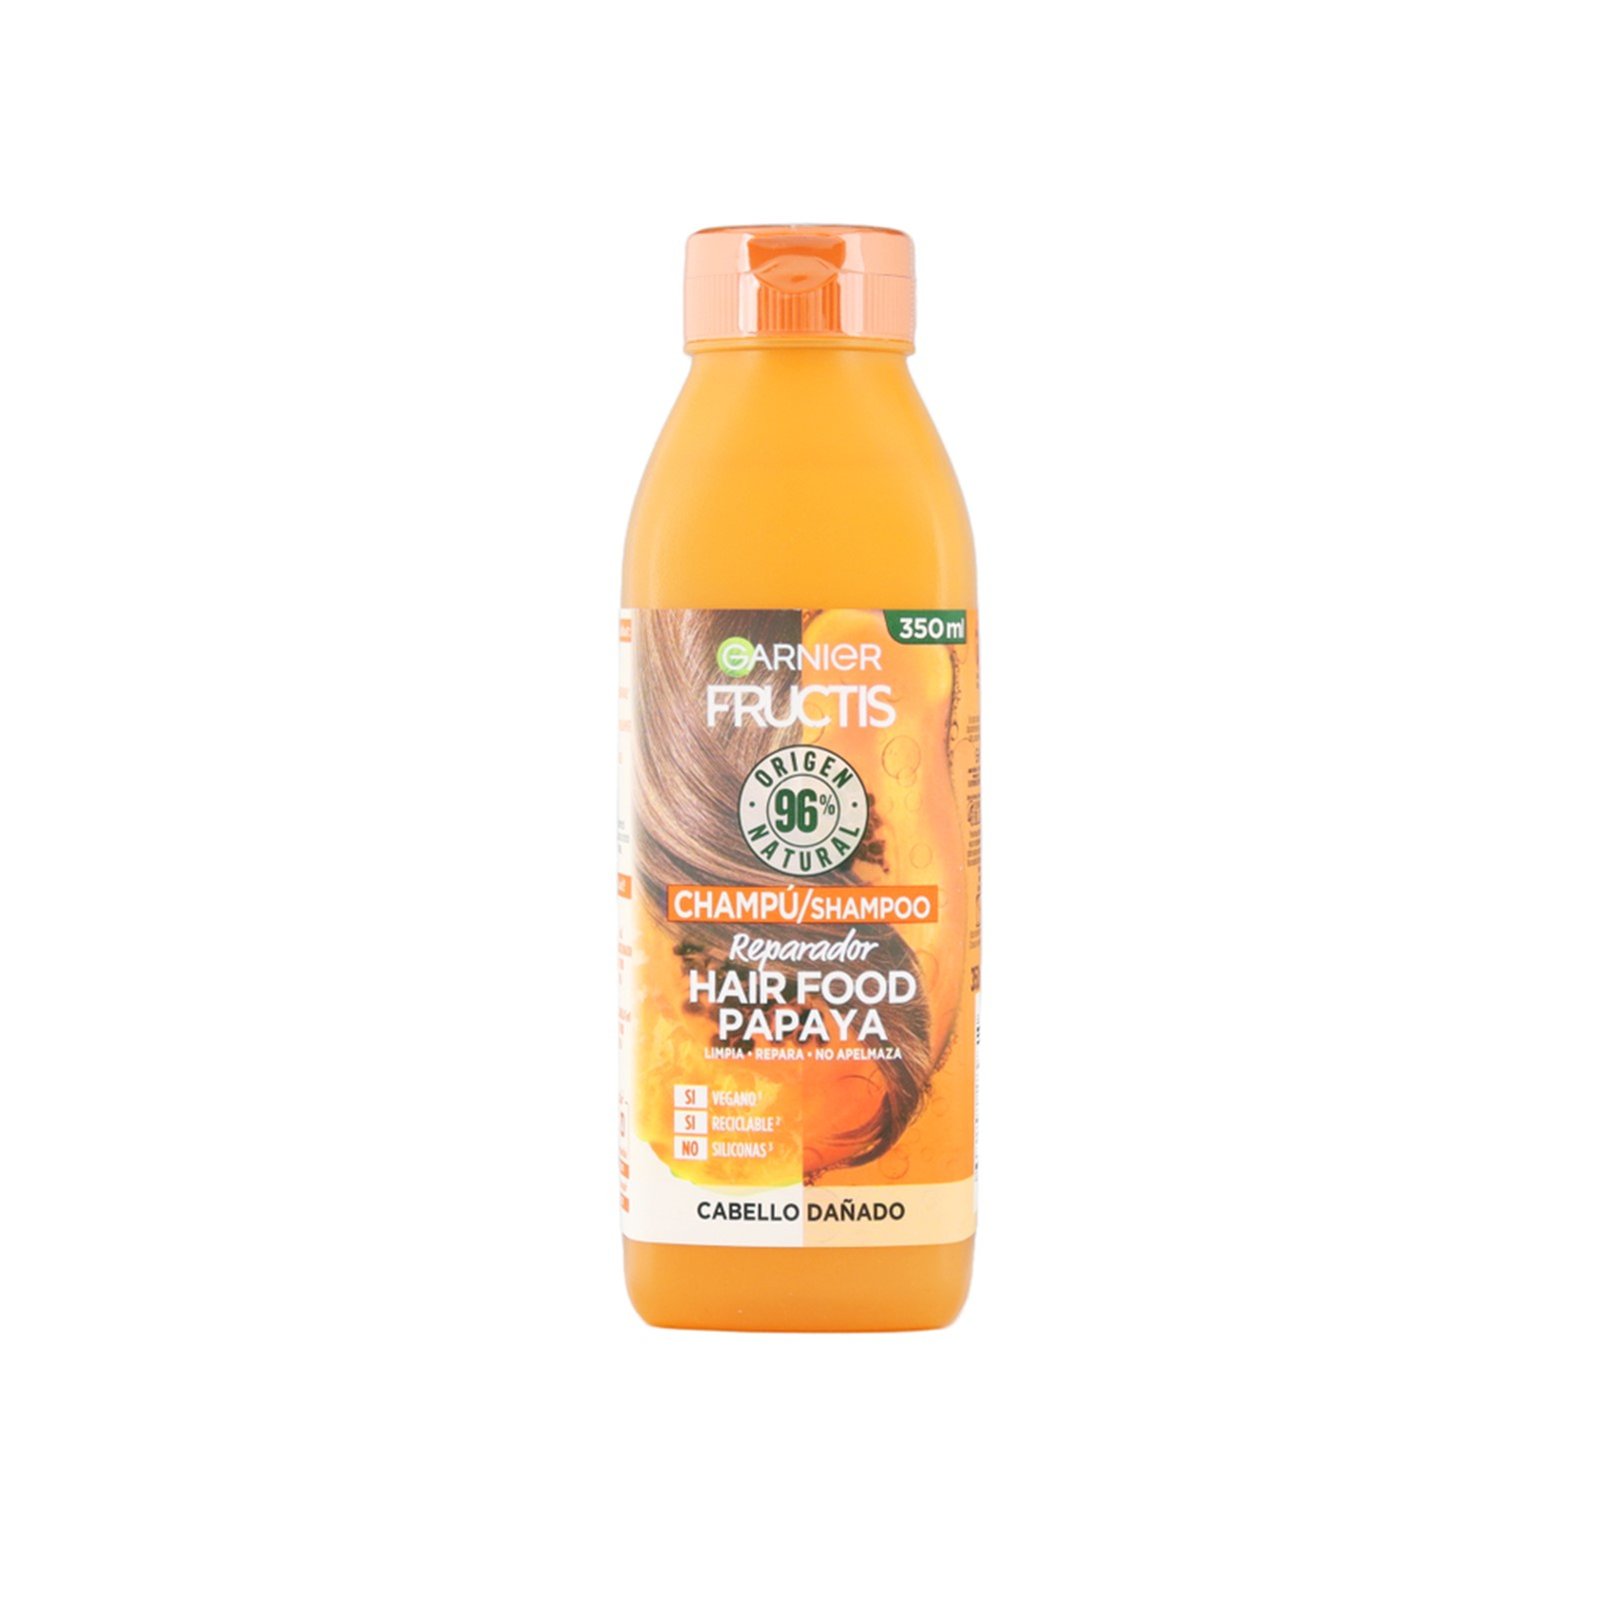 Garnier Fructis Hair Food Papaya Shampoo 350ml (11.83fl oz)